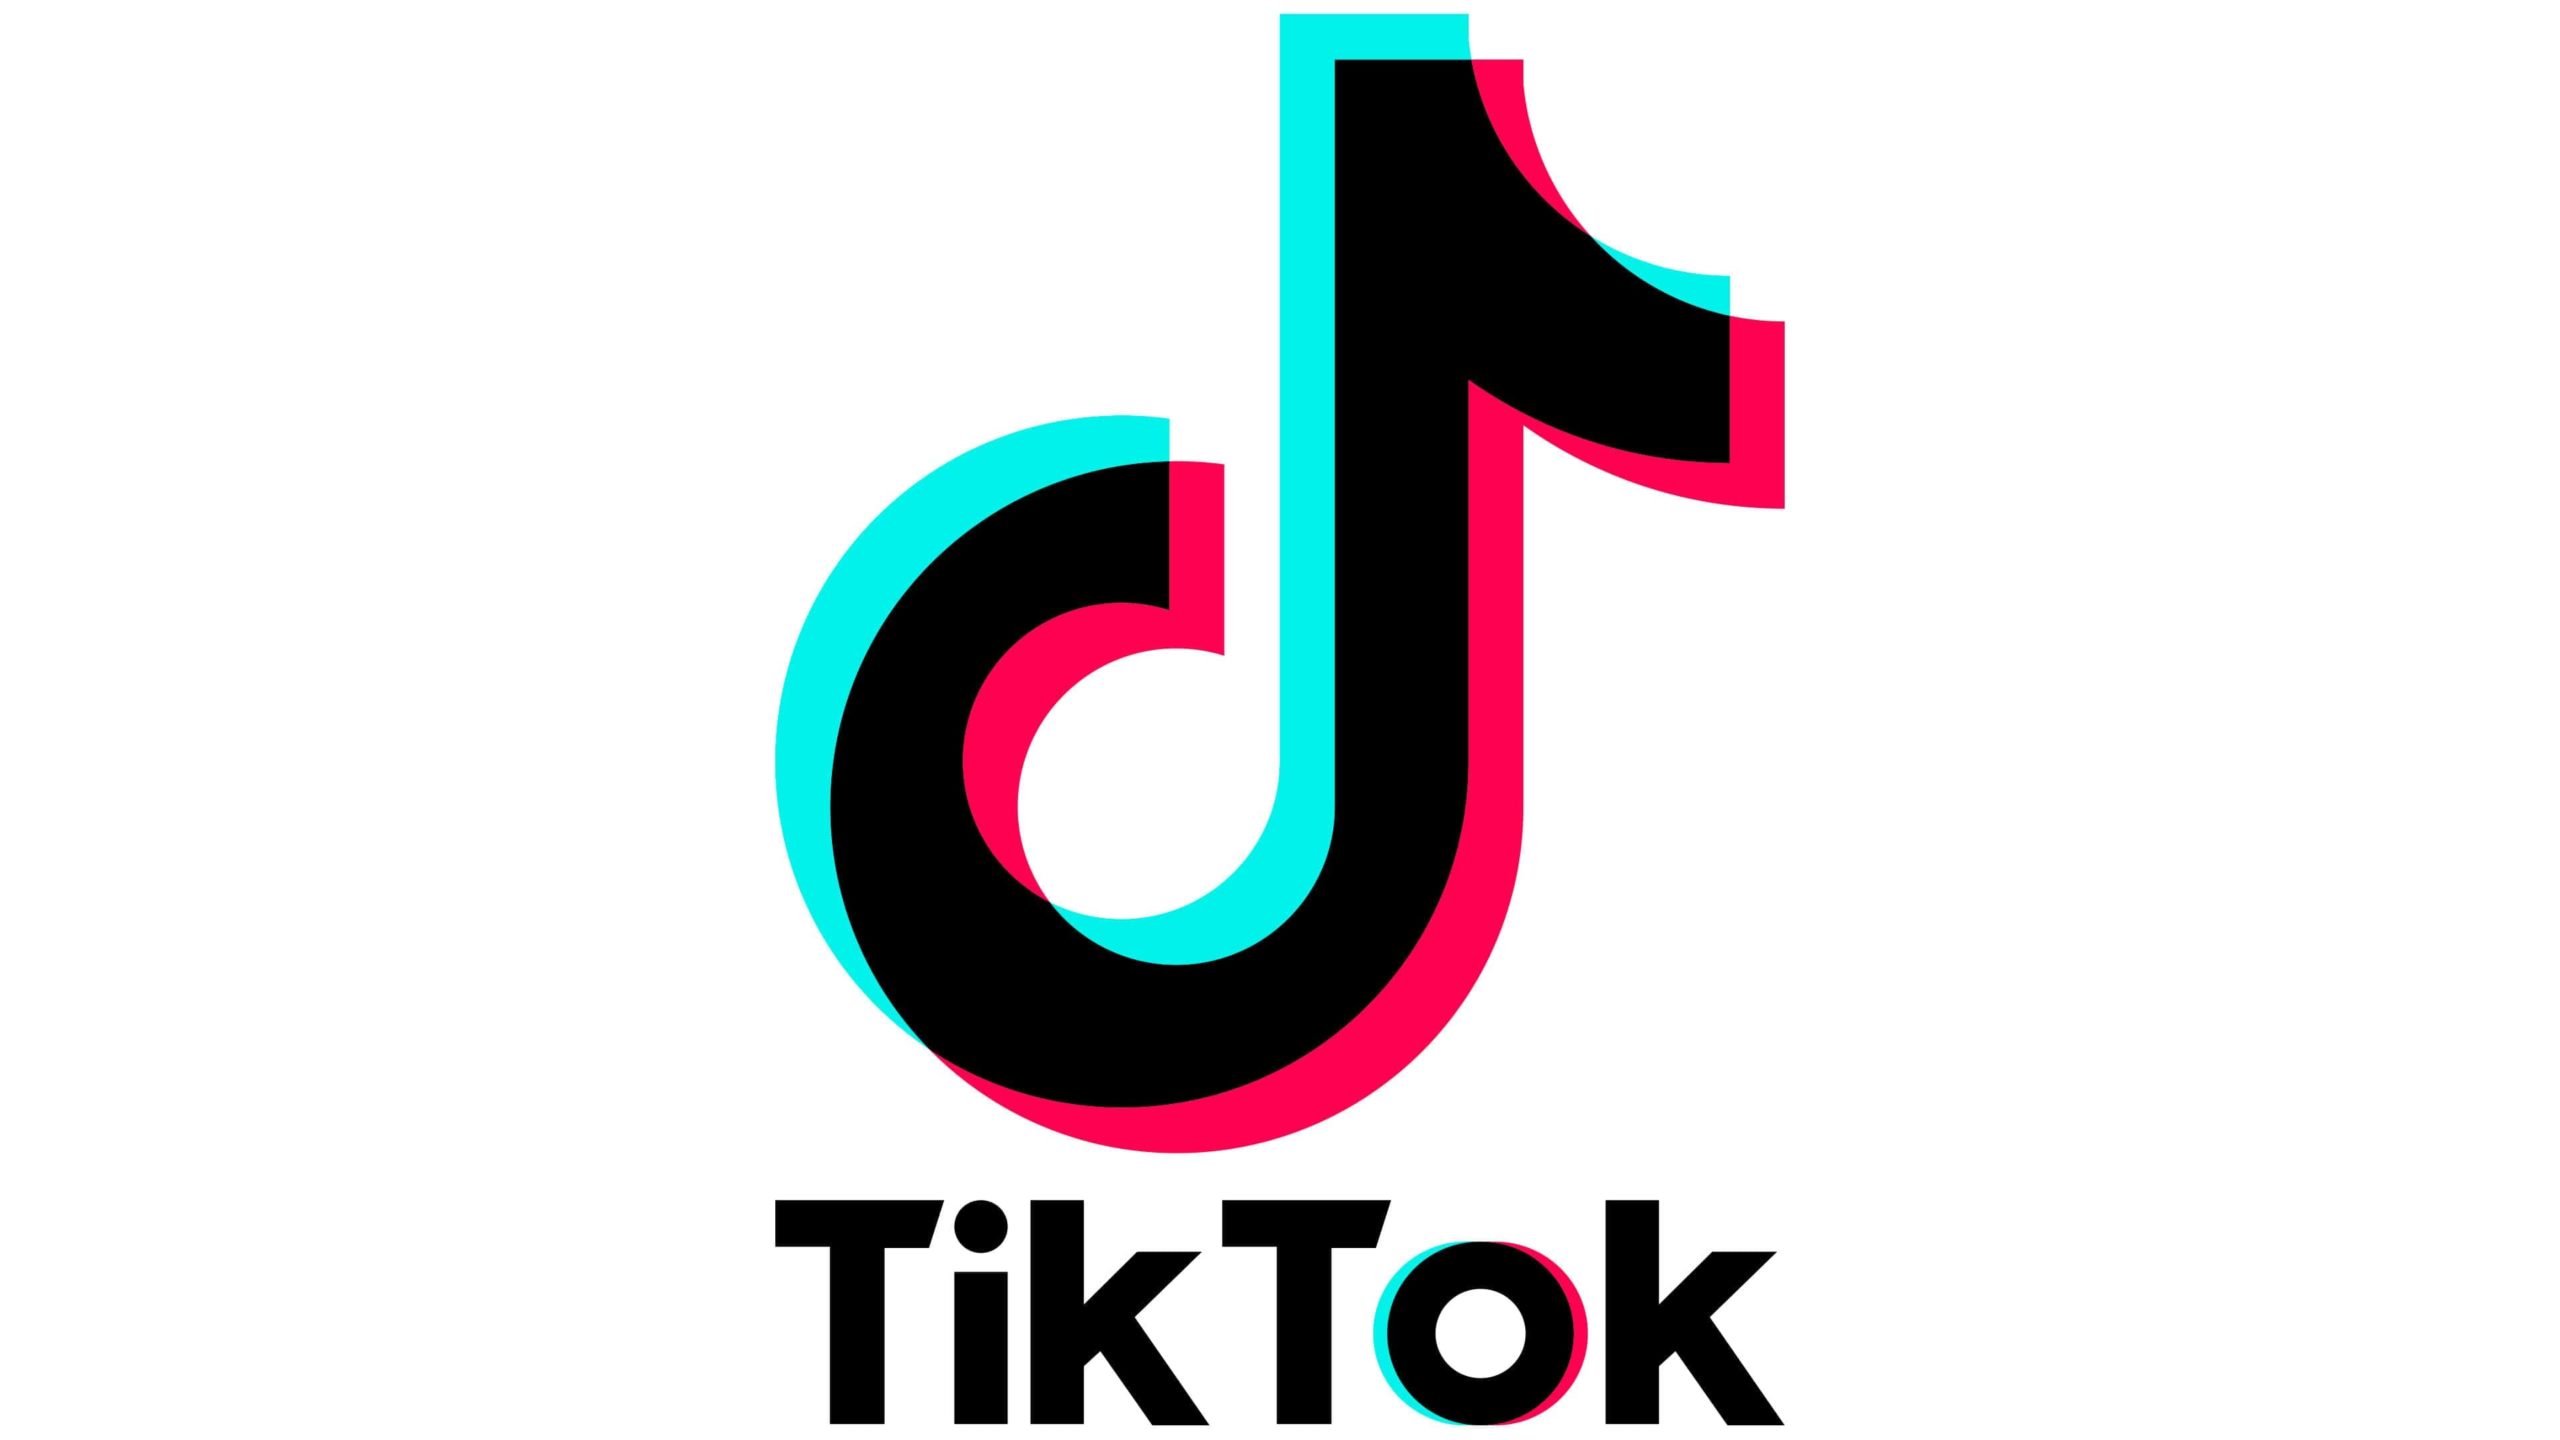 tiktok logo for business cards 1